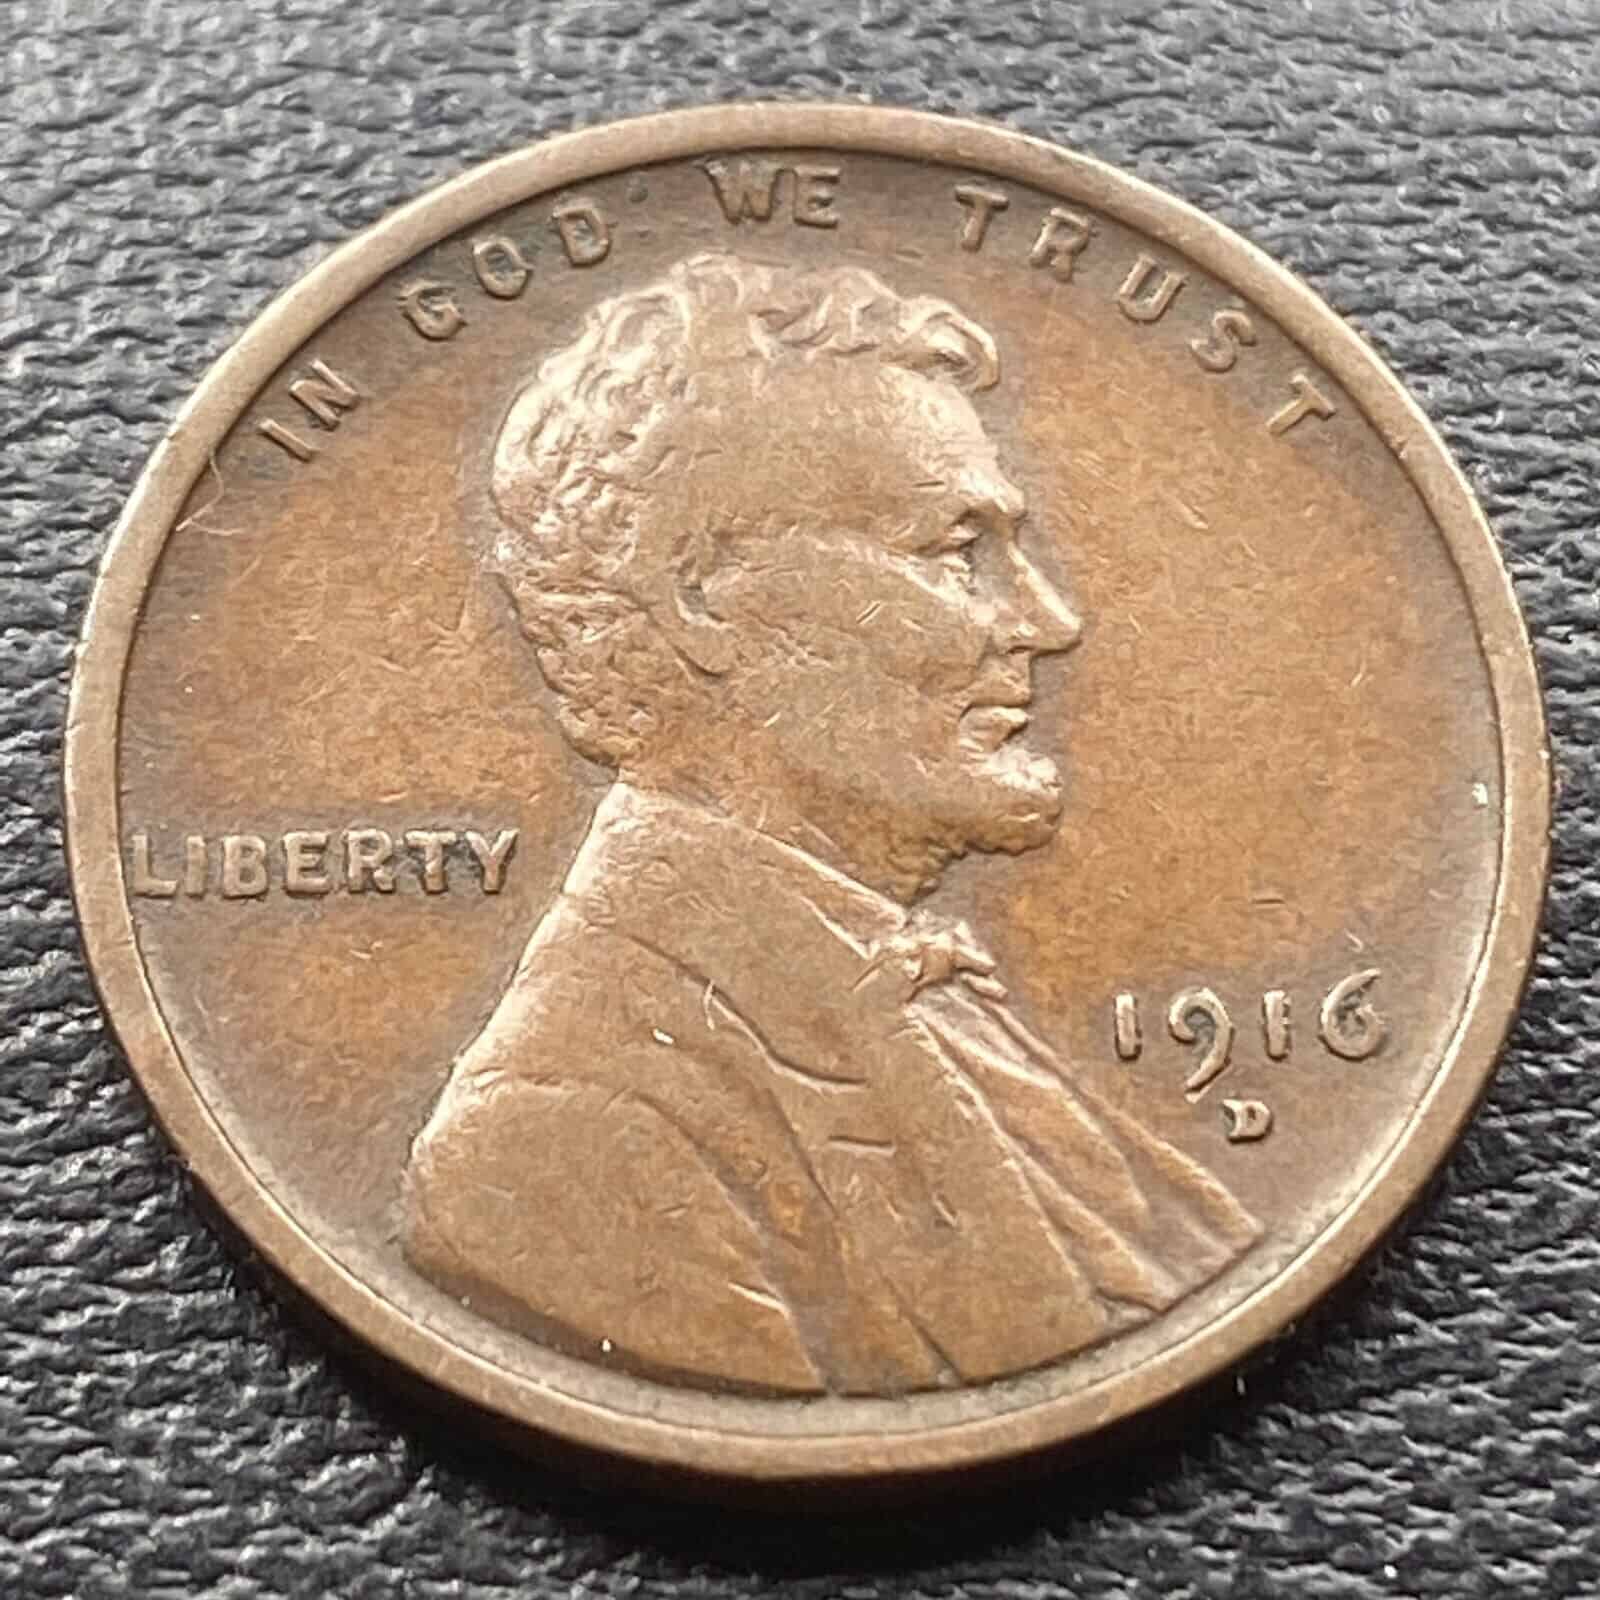 1916 D Penny